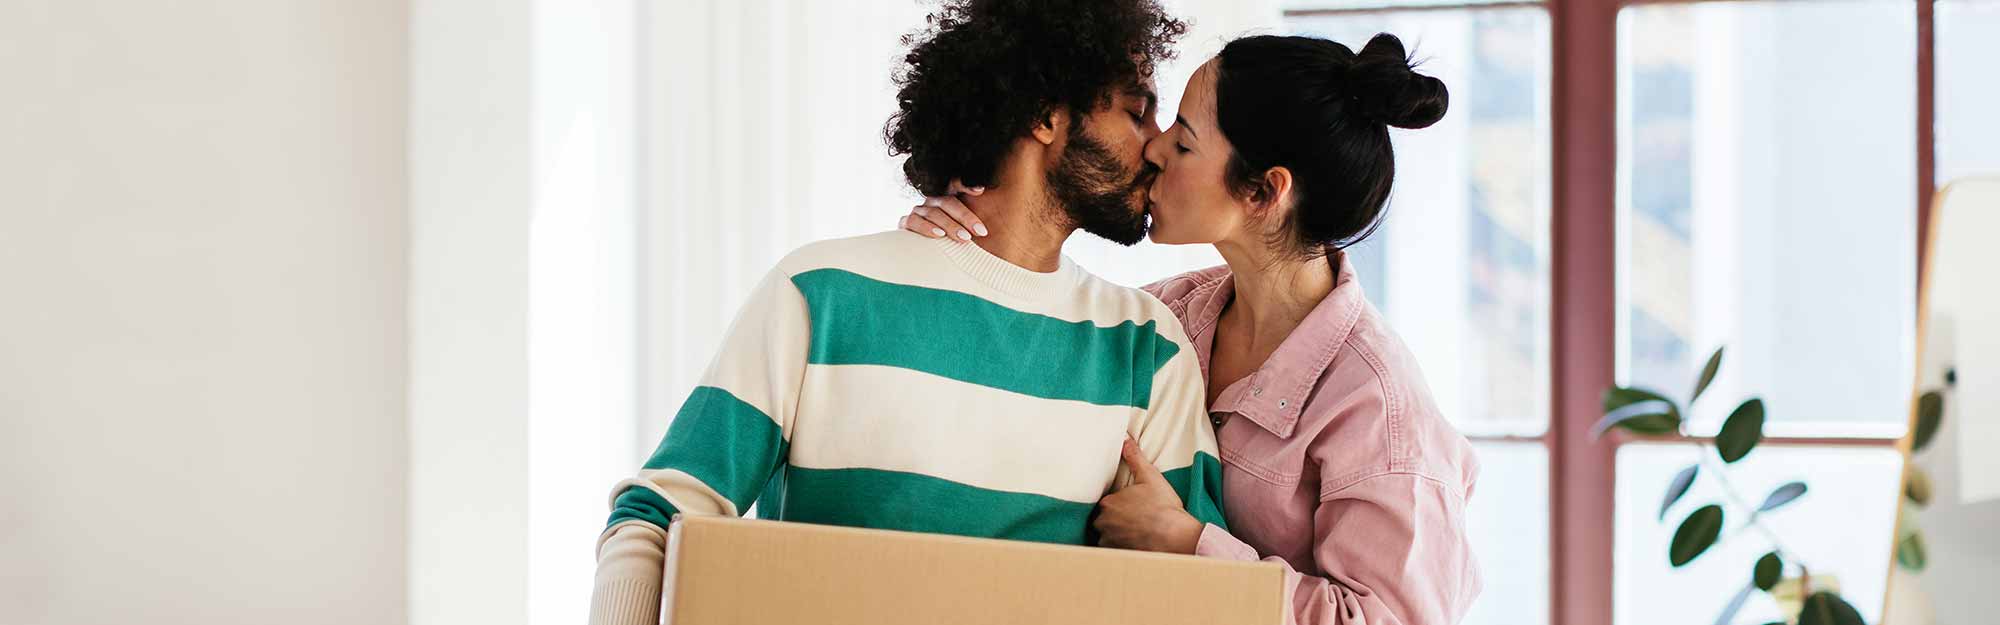 Par står i ett hus och pussas, mannen håller en flyttkartong